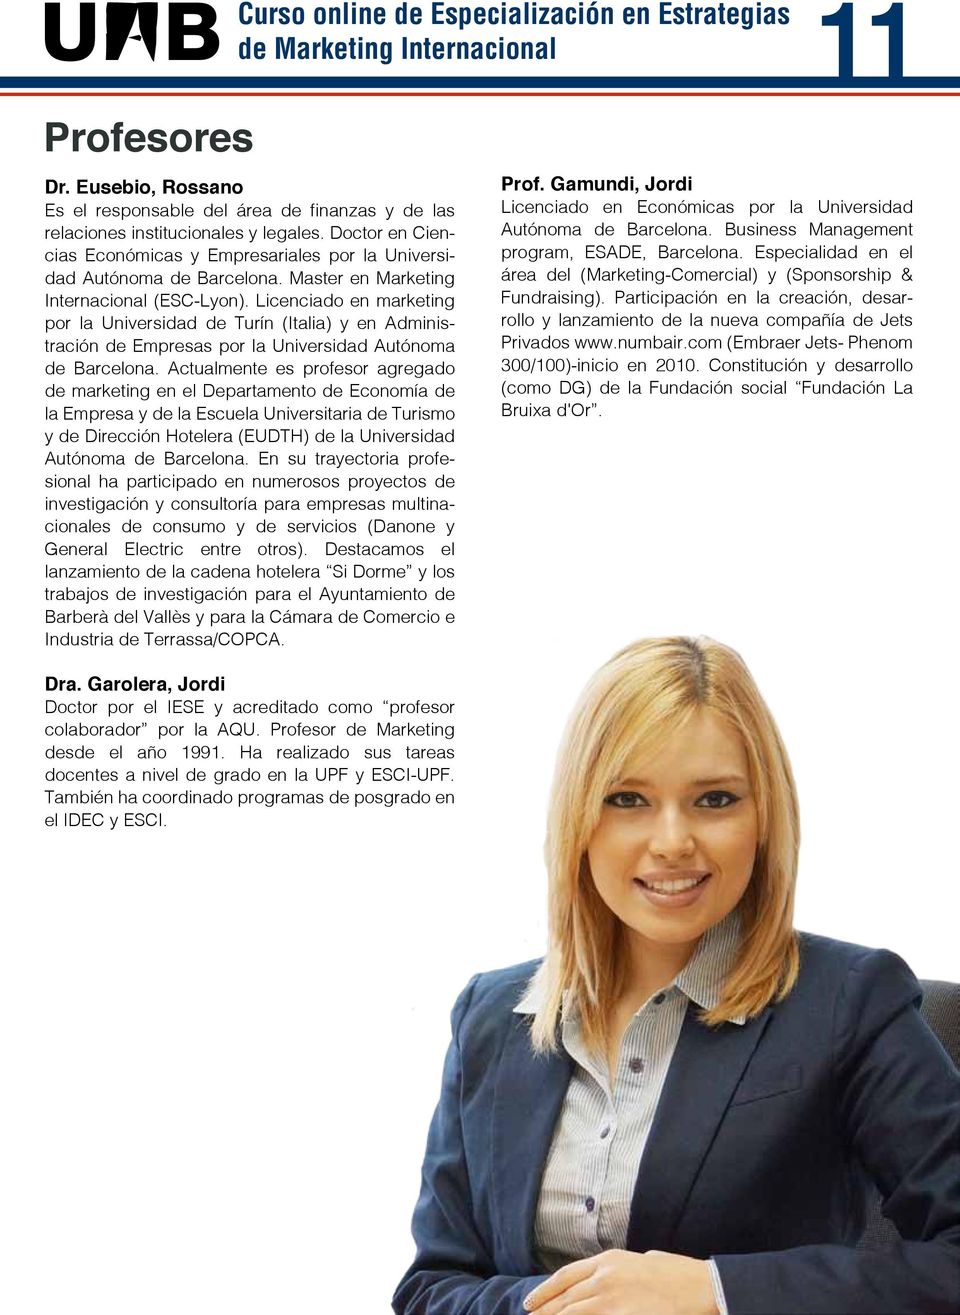 Licenciado en marketing por la Universidad de Turín (Italia) y en Administración de Empresas por la Universidad Autónoma de Barcelona.